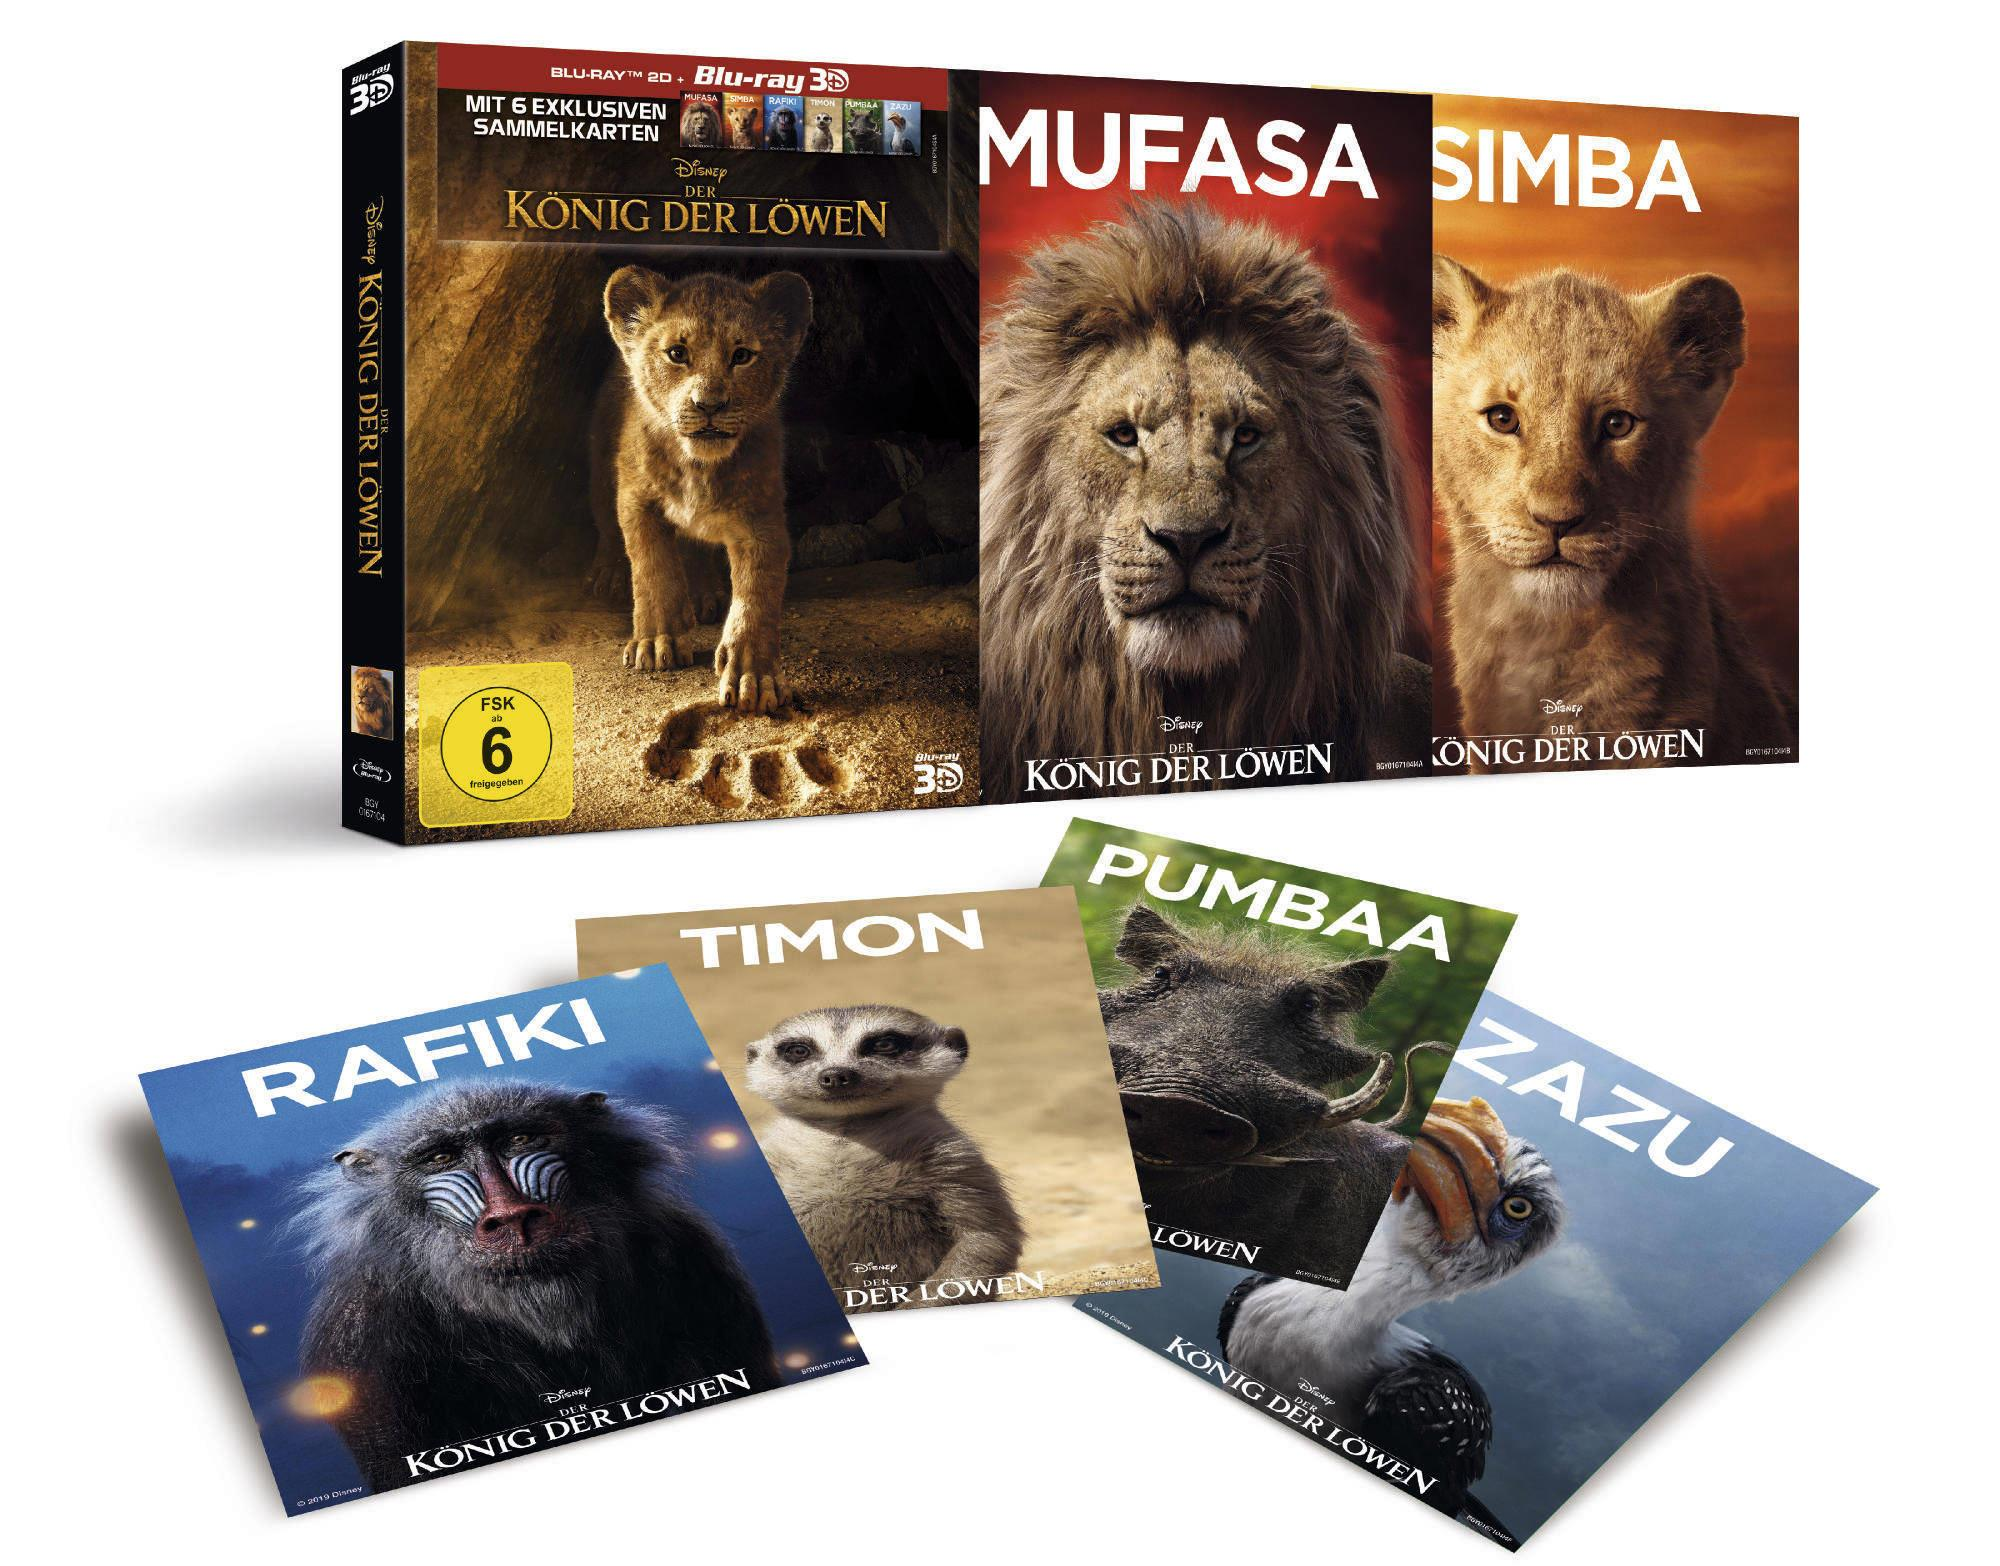 Löwen 3D Blu-ray (+2D) der König Der